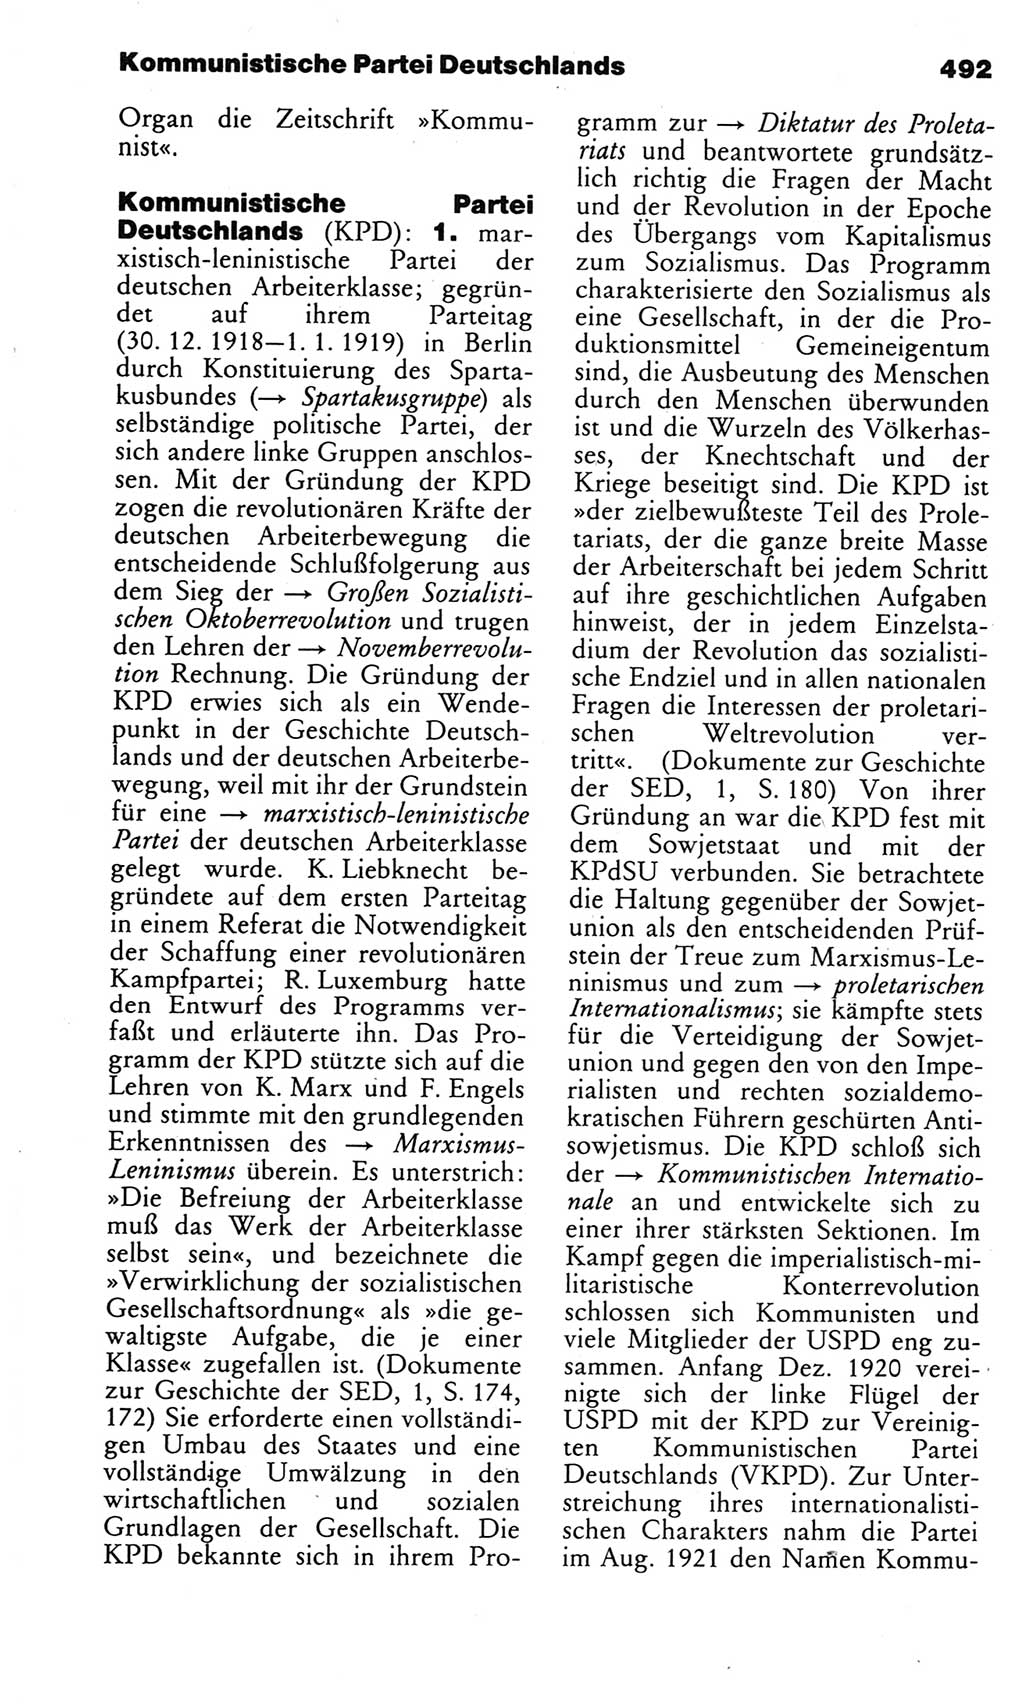 Kleines politisches Wörterbuch [Deutsche Demokratische Republik (DDR)] 1983, Seite 492 (Kl. pol. Wb. DDR 1983, S. 492)